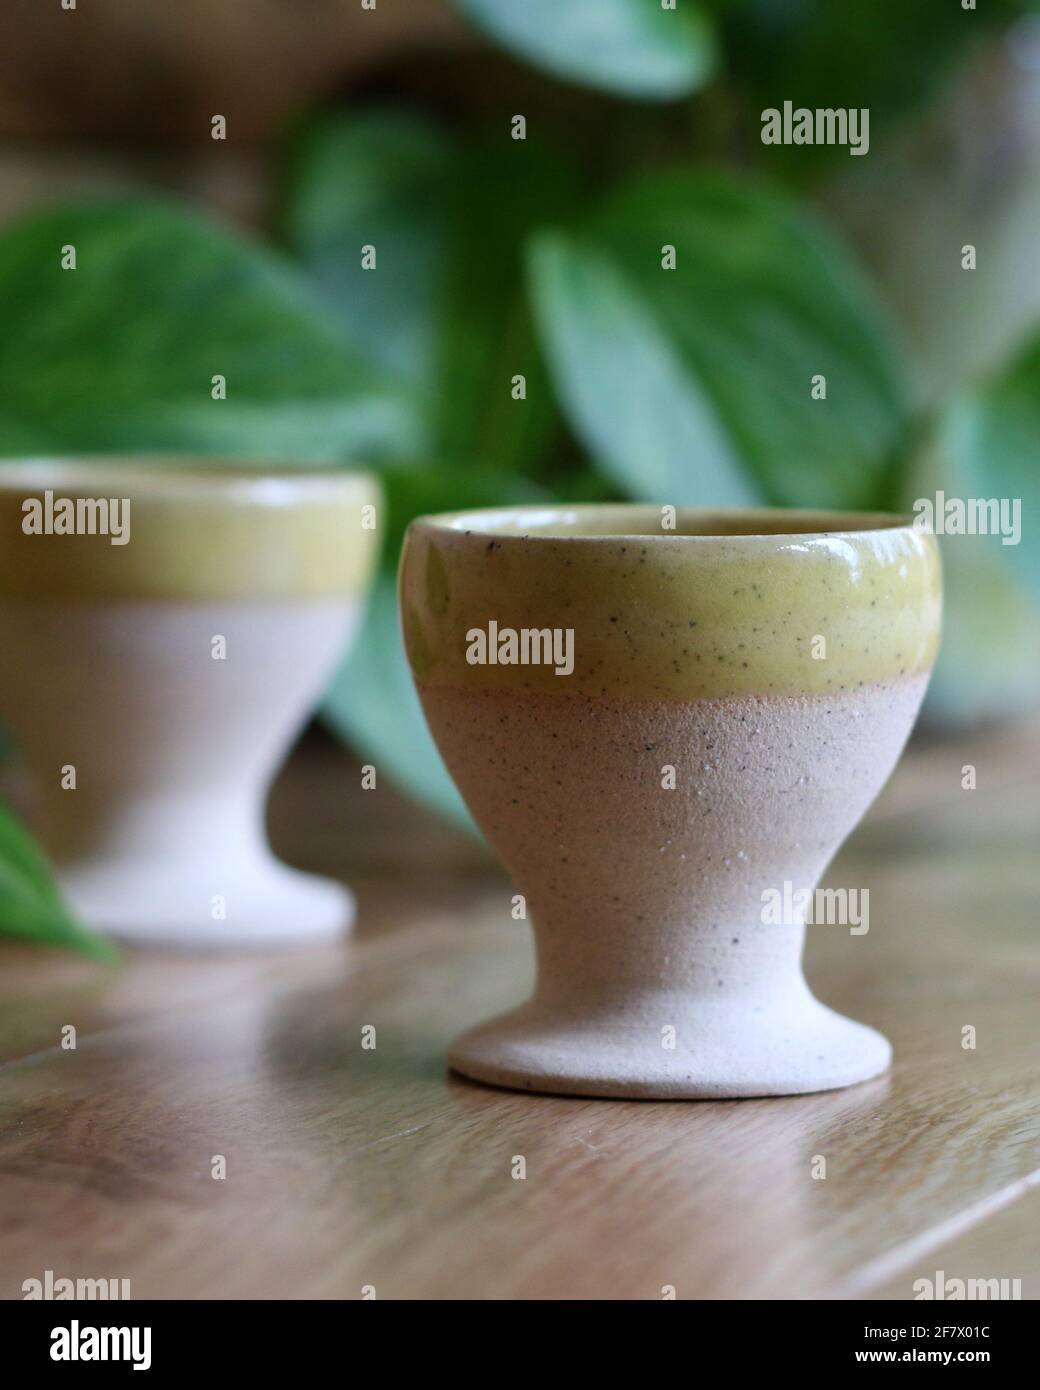 Coquetiers de poterie fabriqués à l'aide d'une roue de poterie manuelle Banque D'Images